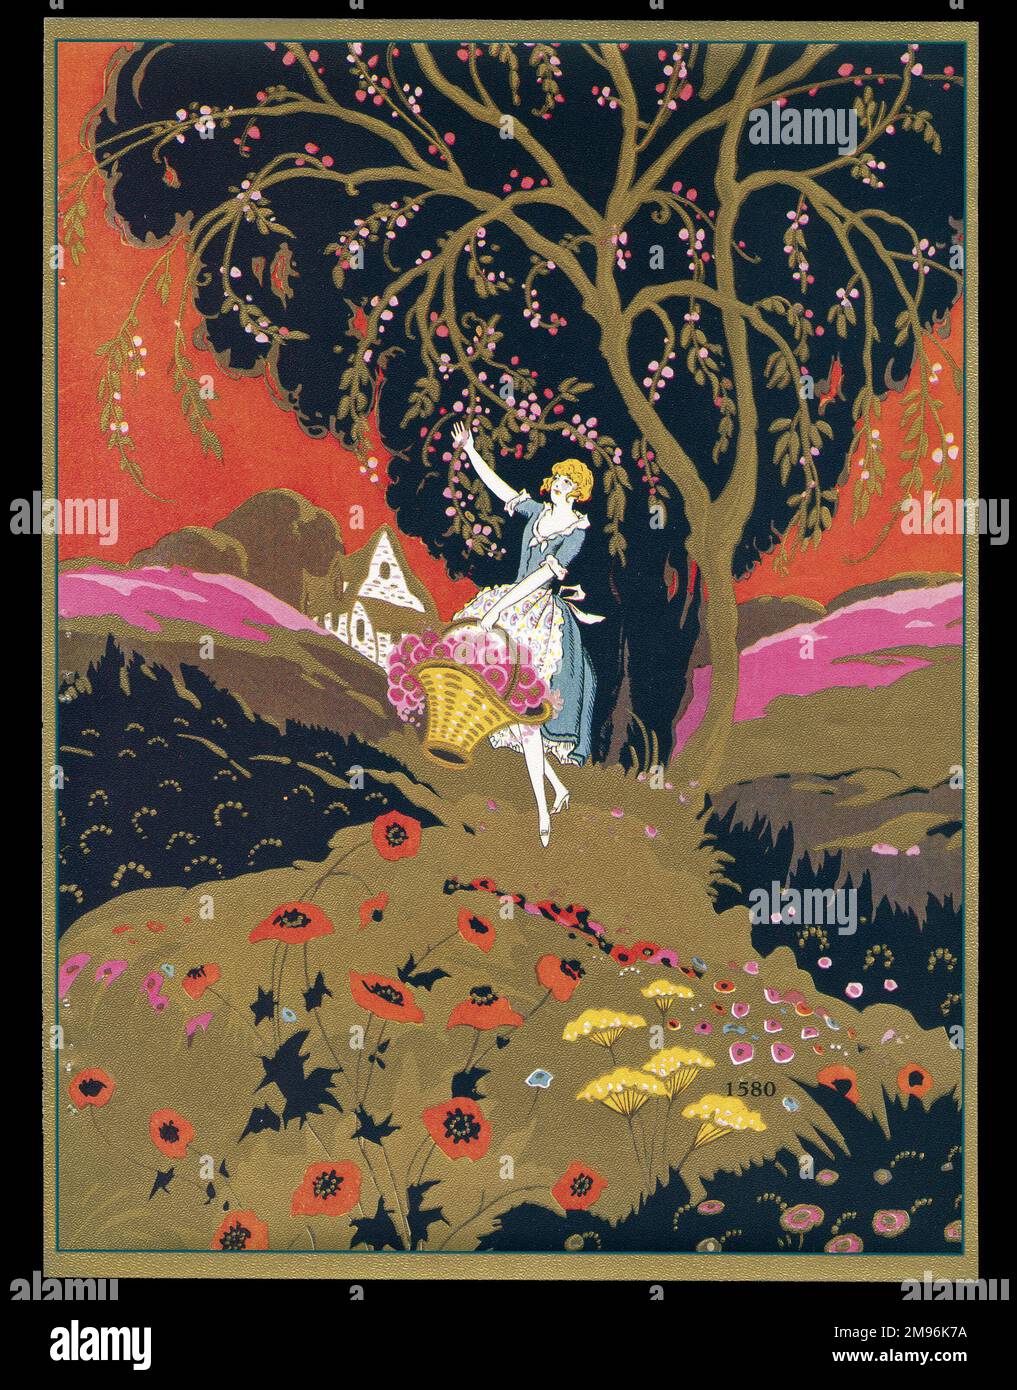 Schokoladenschachtel mit einer Dame, die Obst von einem Baum pflückt. Die Landschaft ist in unmöglichen Farben, darunter Schwarz und Gold. Stockfoto